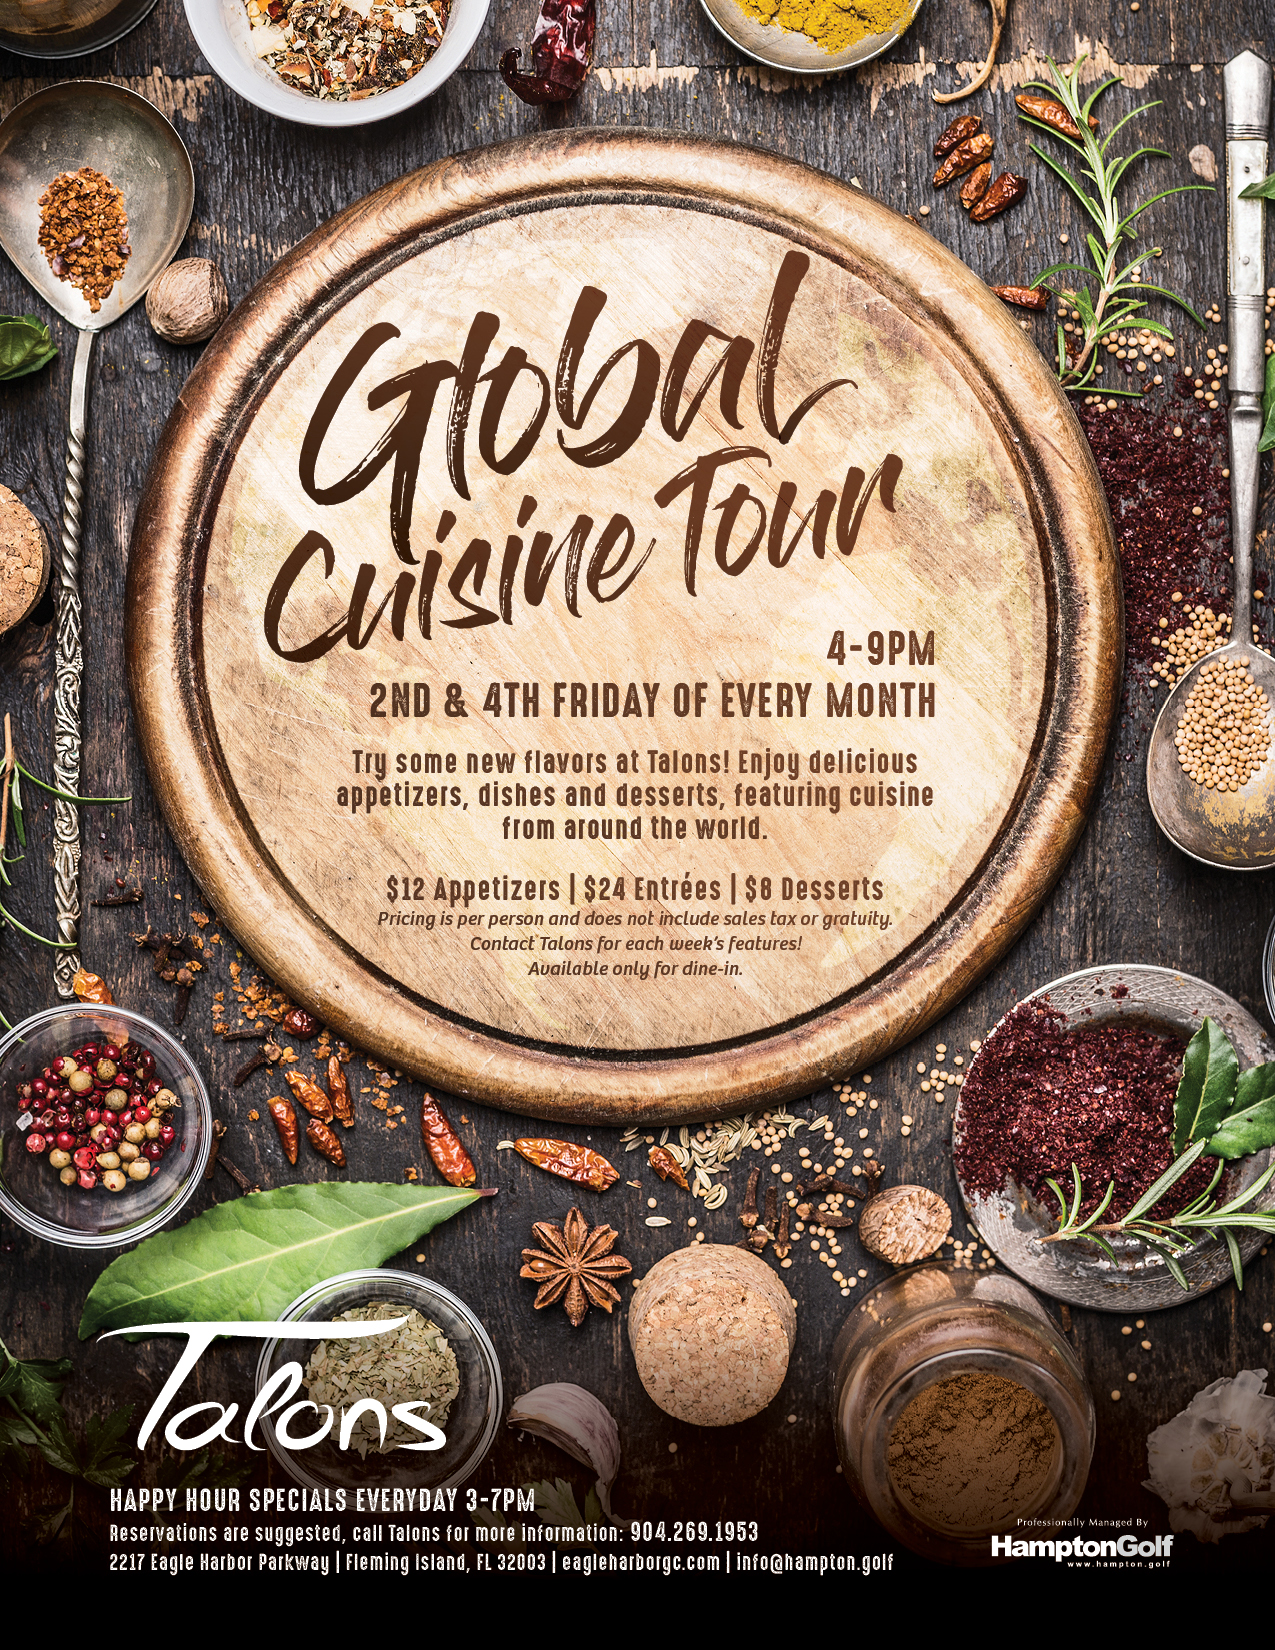 Global Cuisine Tour